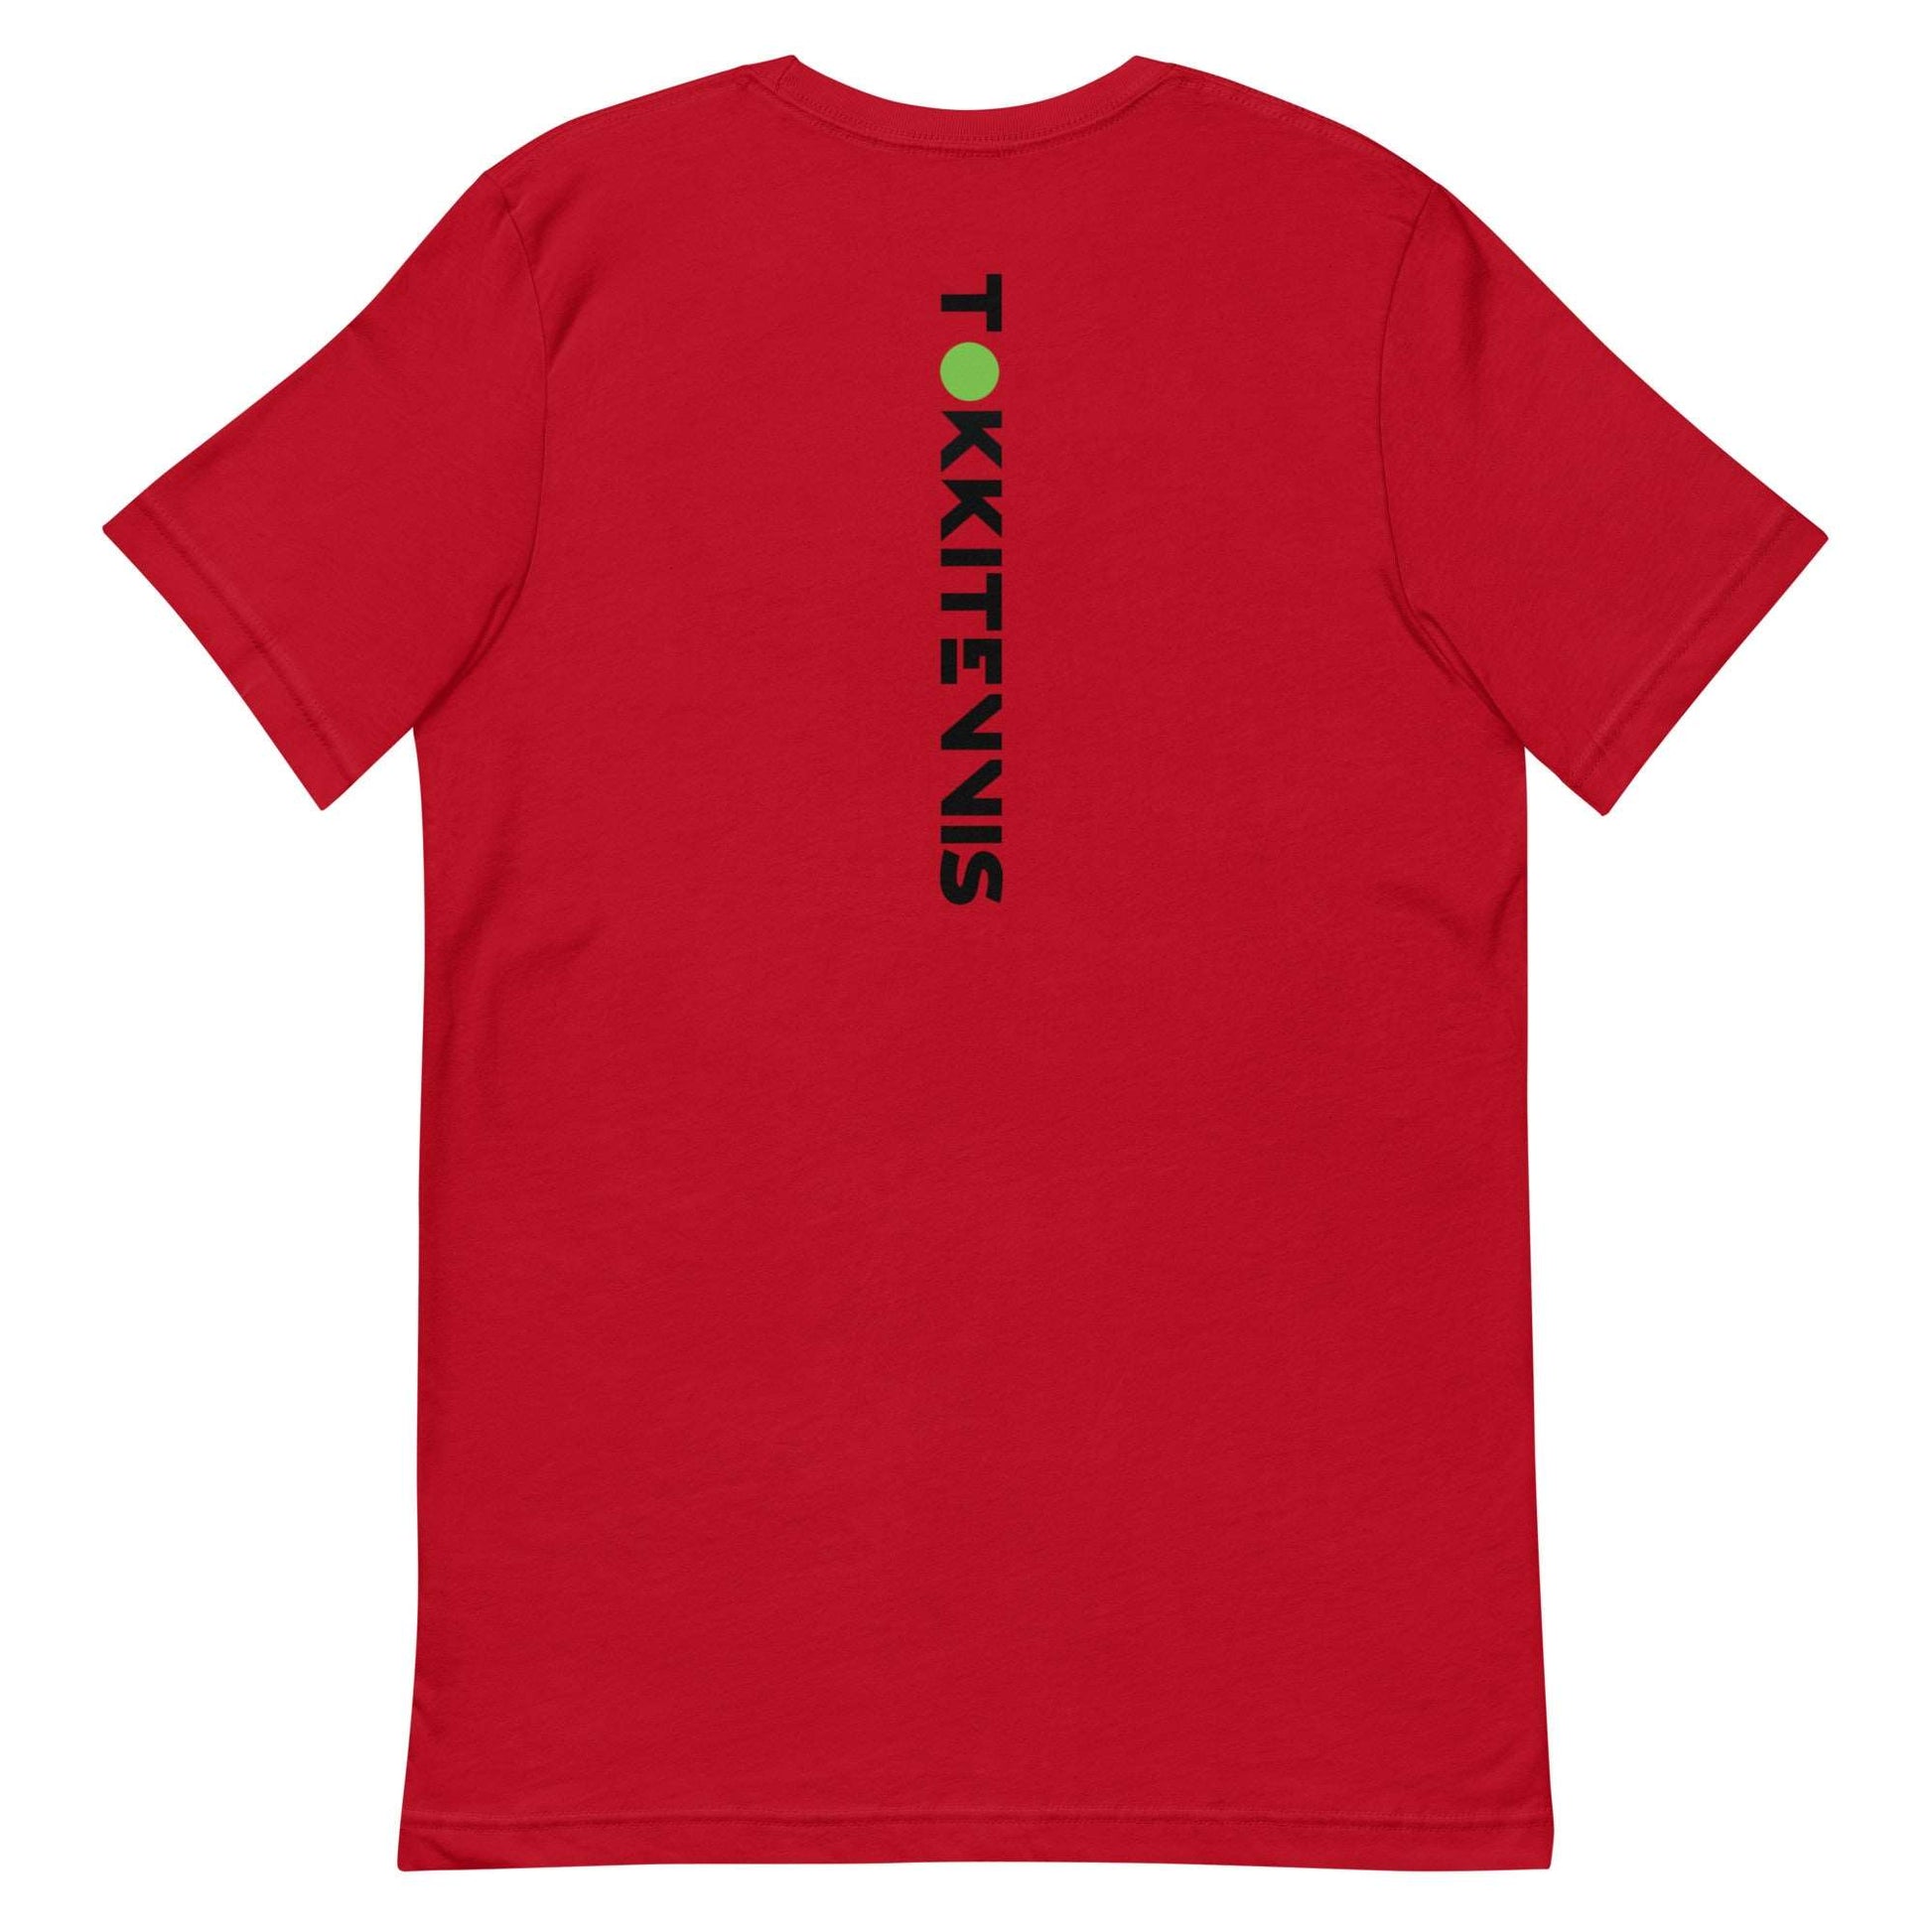 Adult Unisex Ken Red T-Shirt - TOKKITENNIS